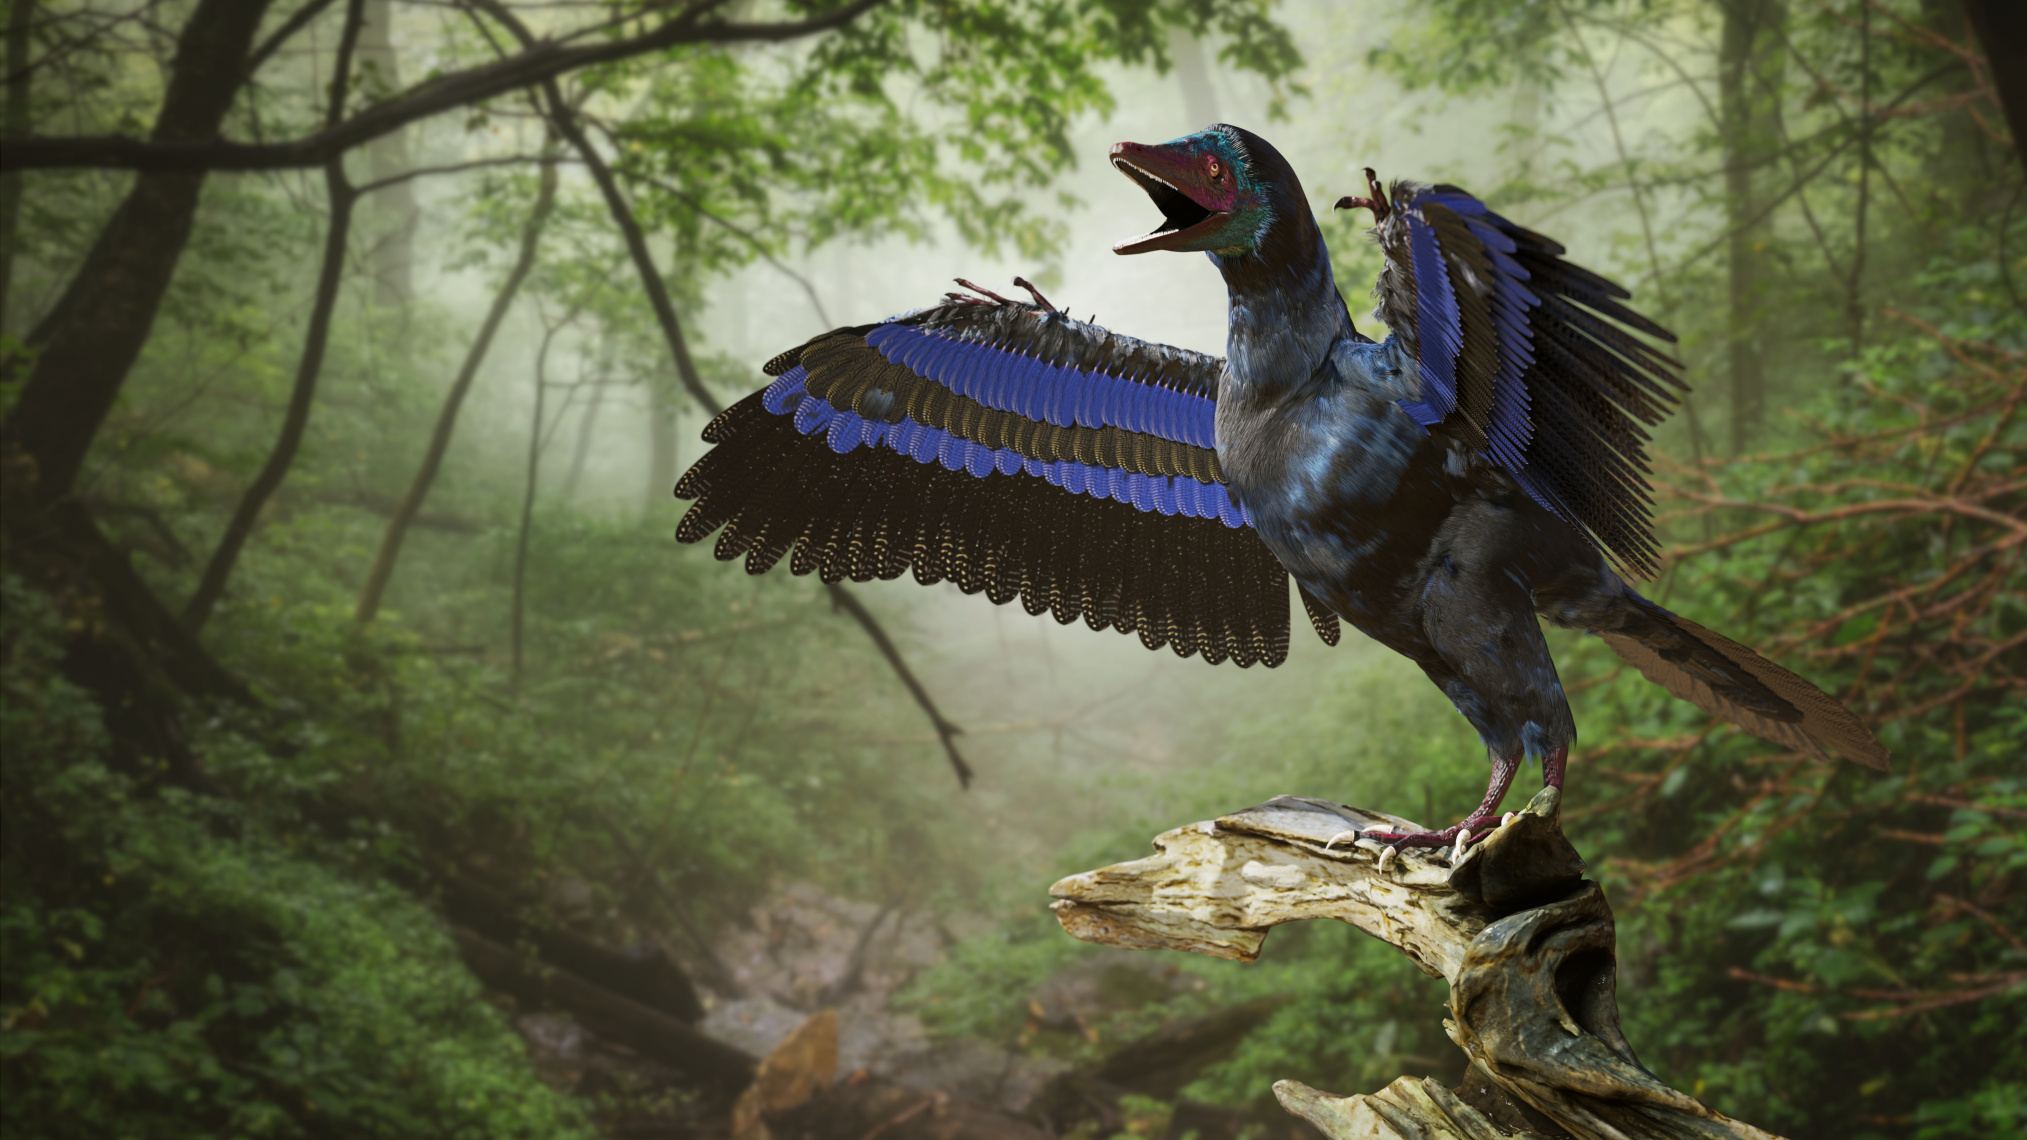 Αρχαιοπτέρυξ, δεινόσαυρος που μοιάζει με πτηνό από την Ύστερη Ιουρασική περίοδο πριν από περίπου 150 εκατομμύρια χρόνια (3d rendering)